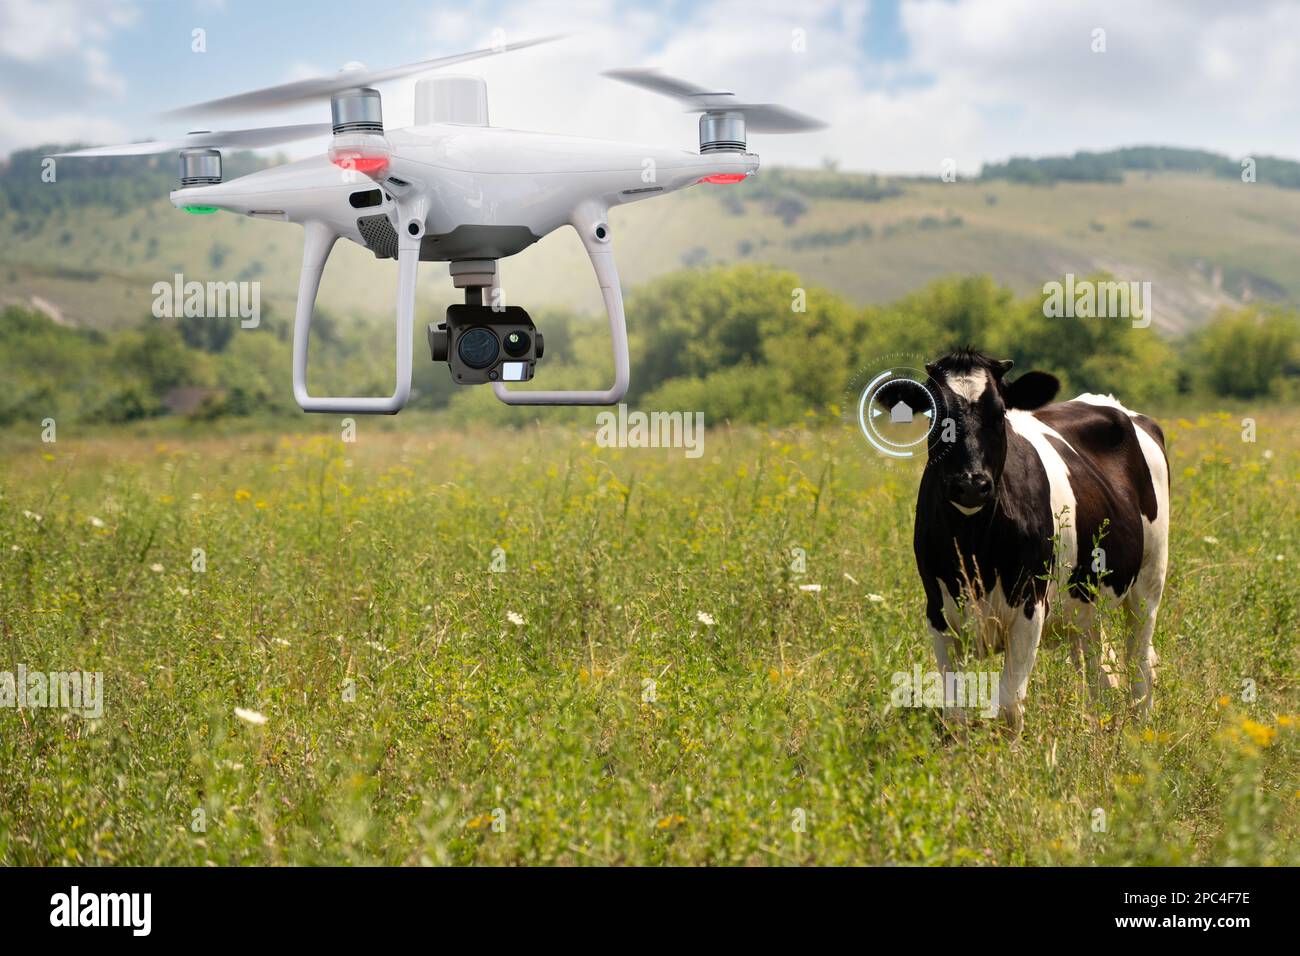 Drone agricole qui observe un troupeau de vaches. Une agriculture intelligente Banque D'Images